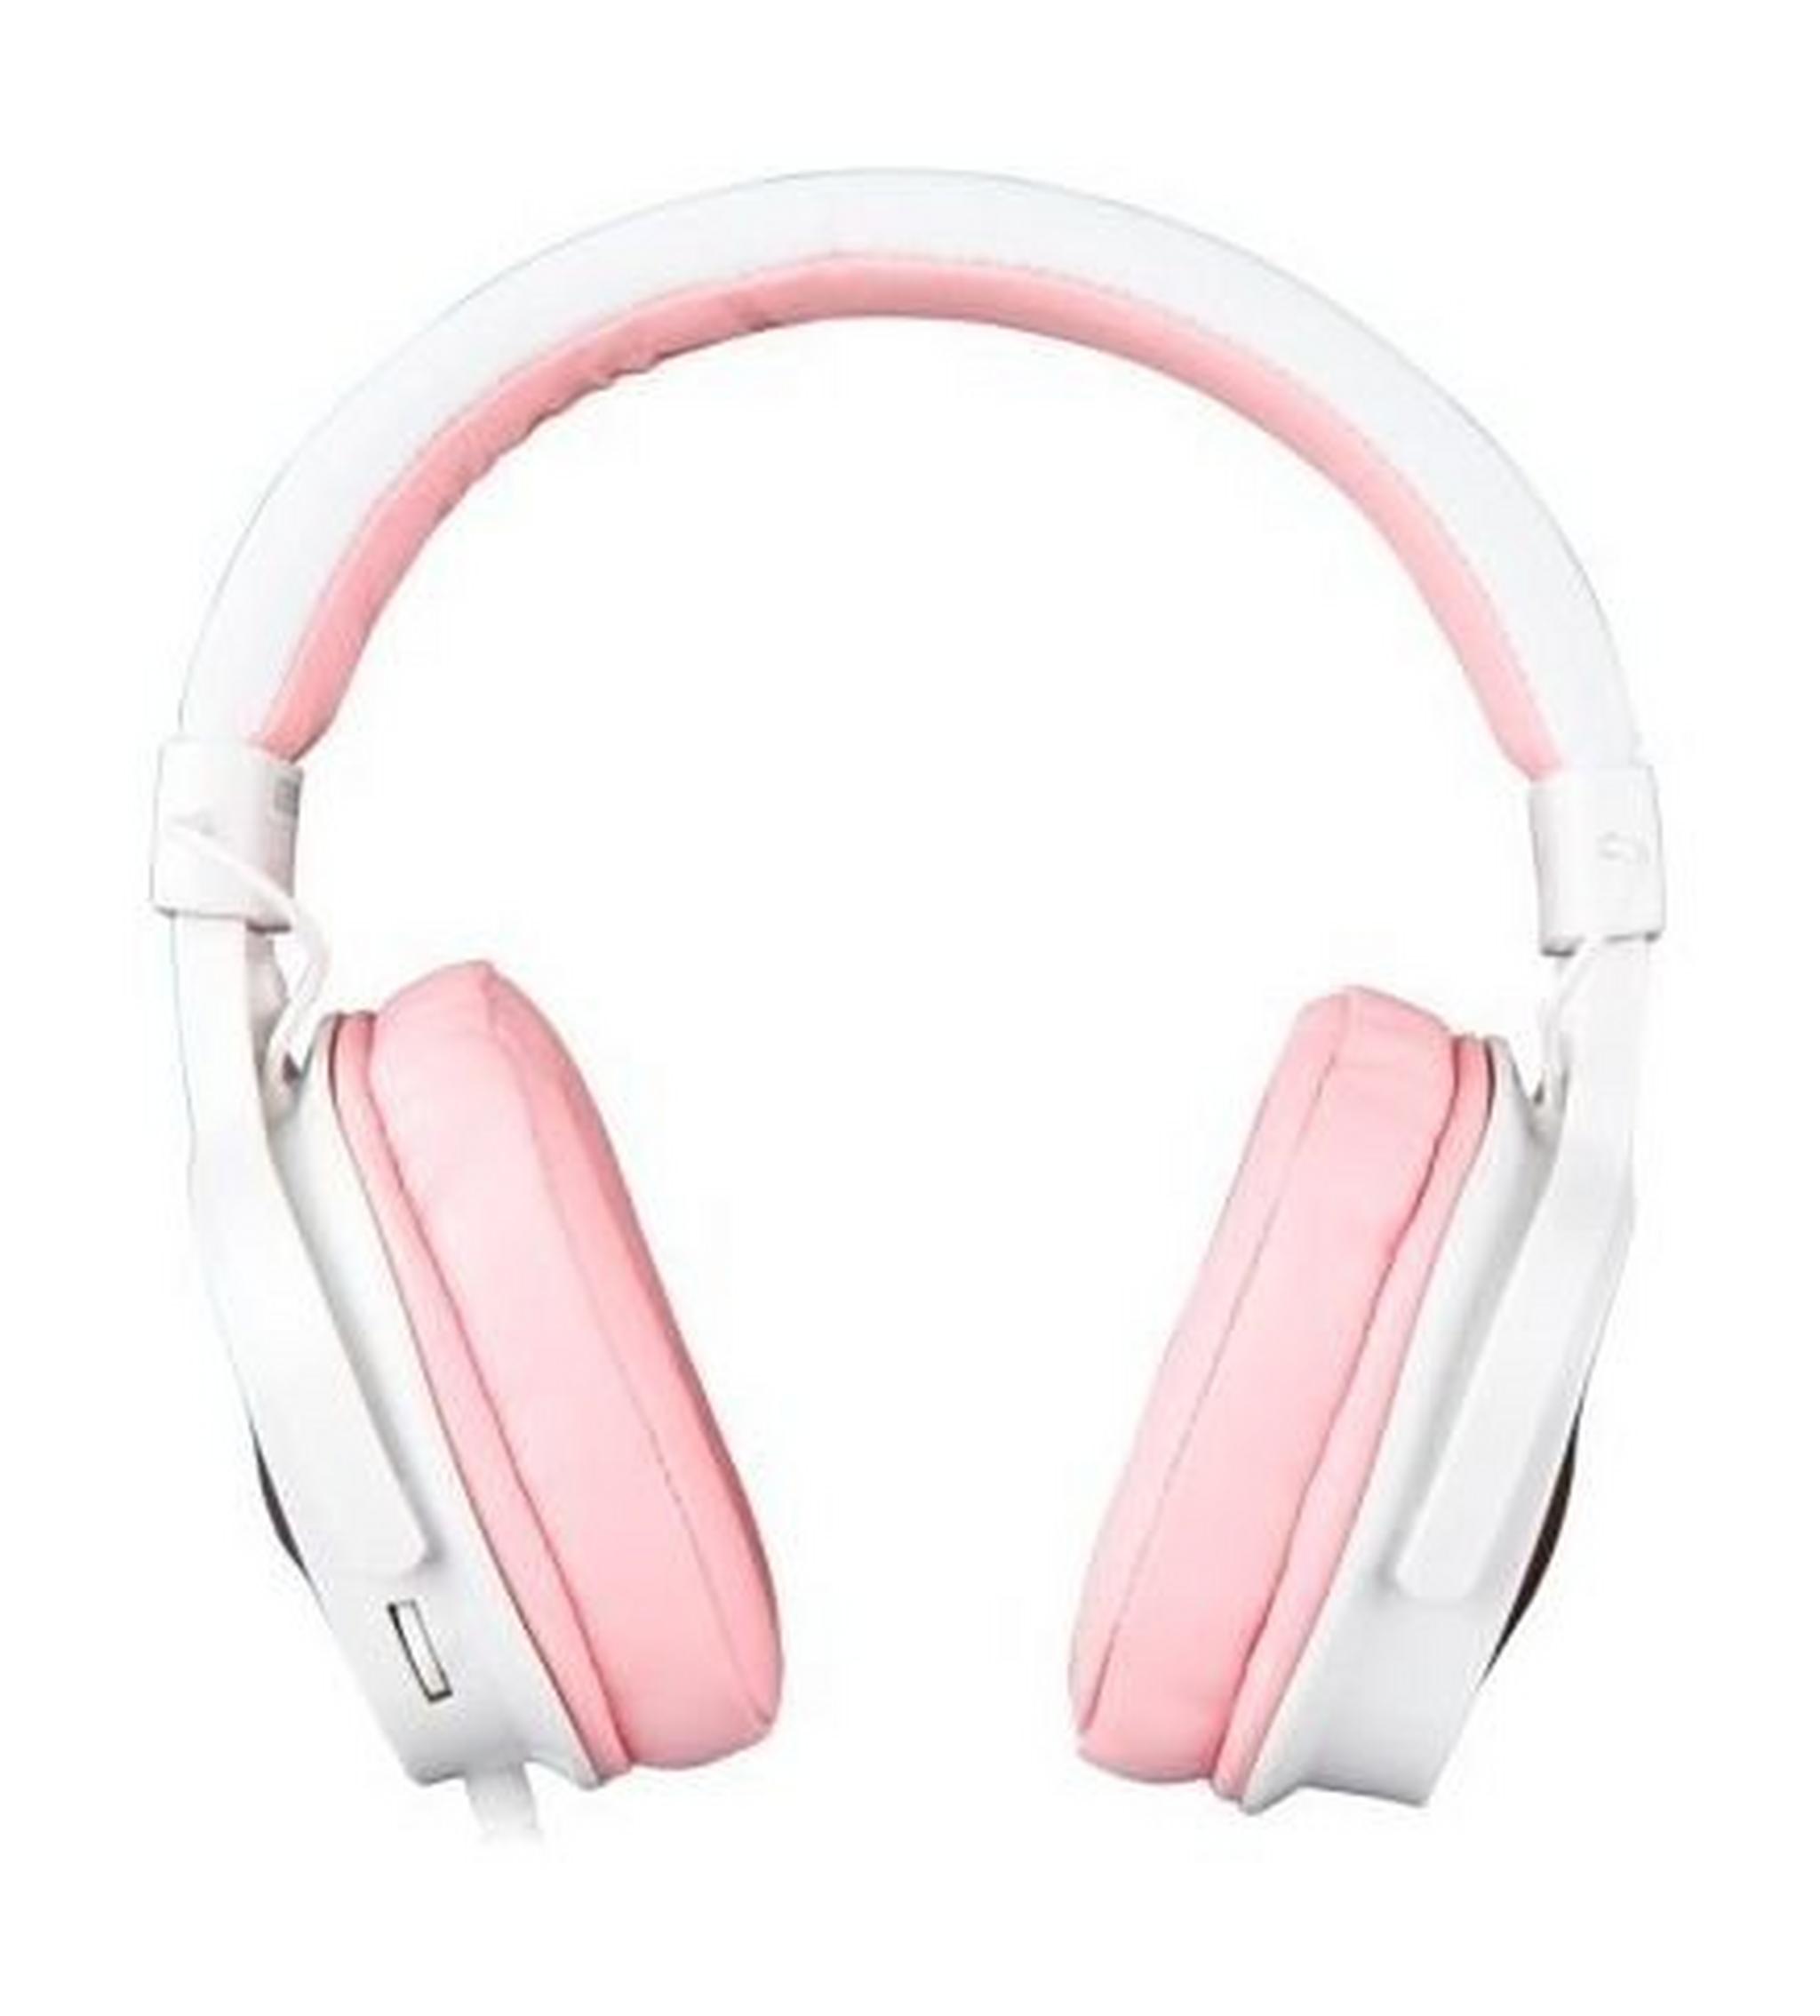 Sades Dpower Gaming Headset - Pink